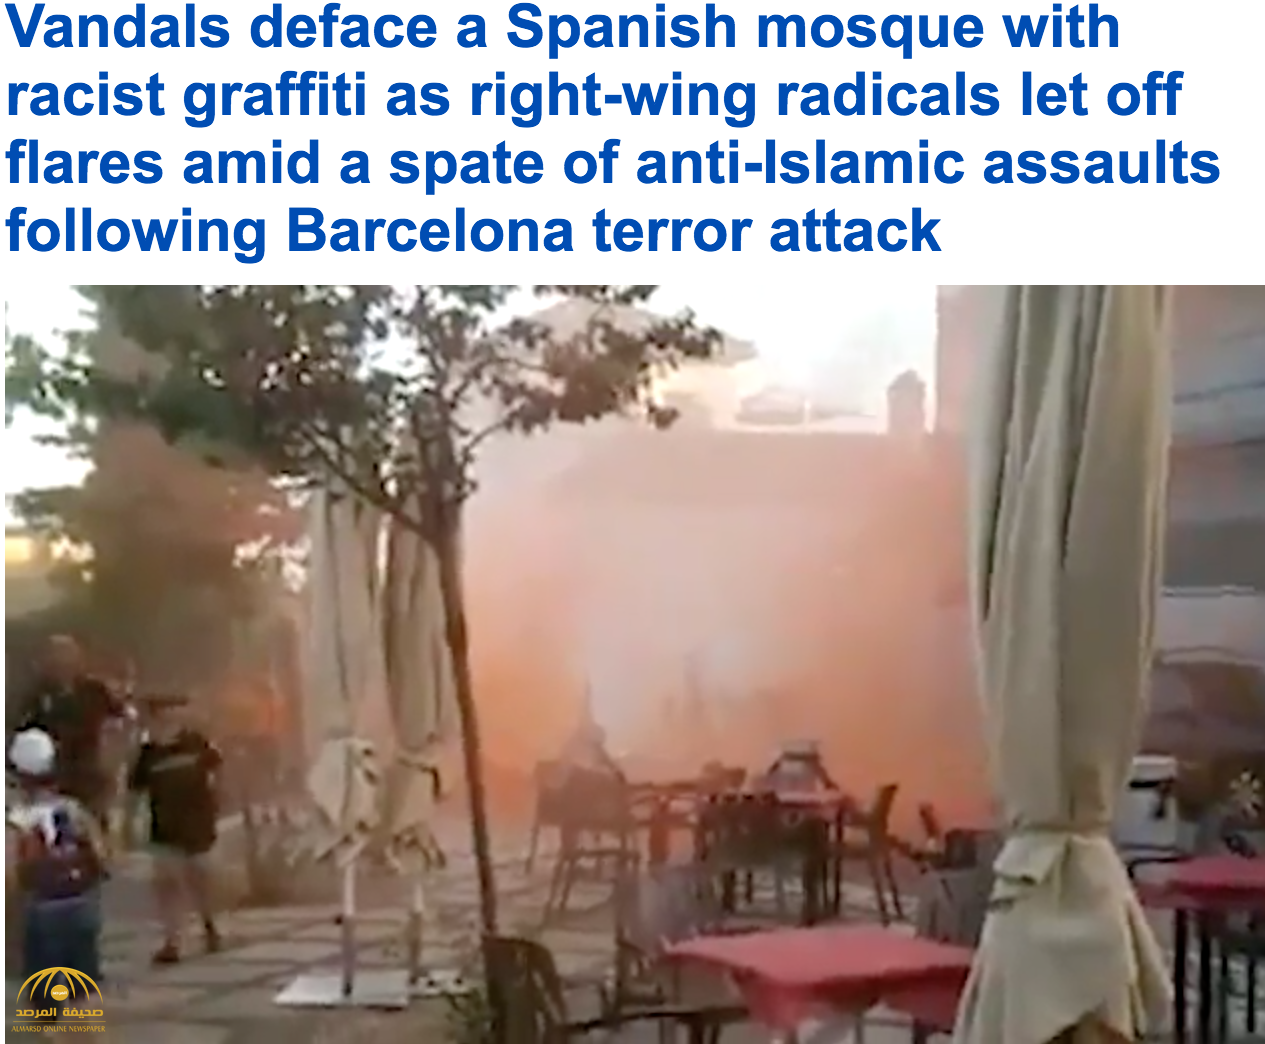 عقب هجوم "برشلونة" الداعشي..  شاهد: ماذا فعل أسبانيون بمسجد في إشبيلية!